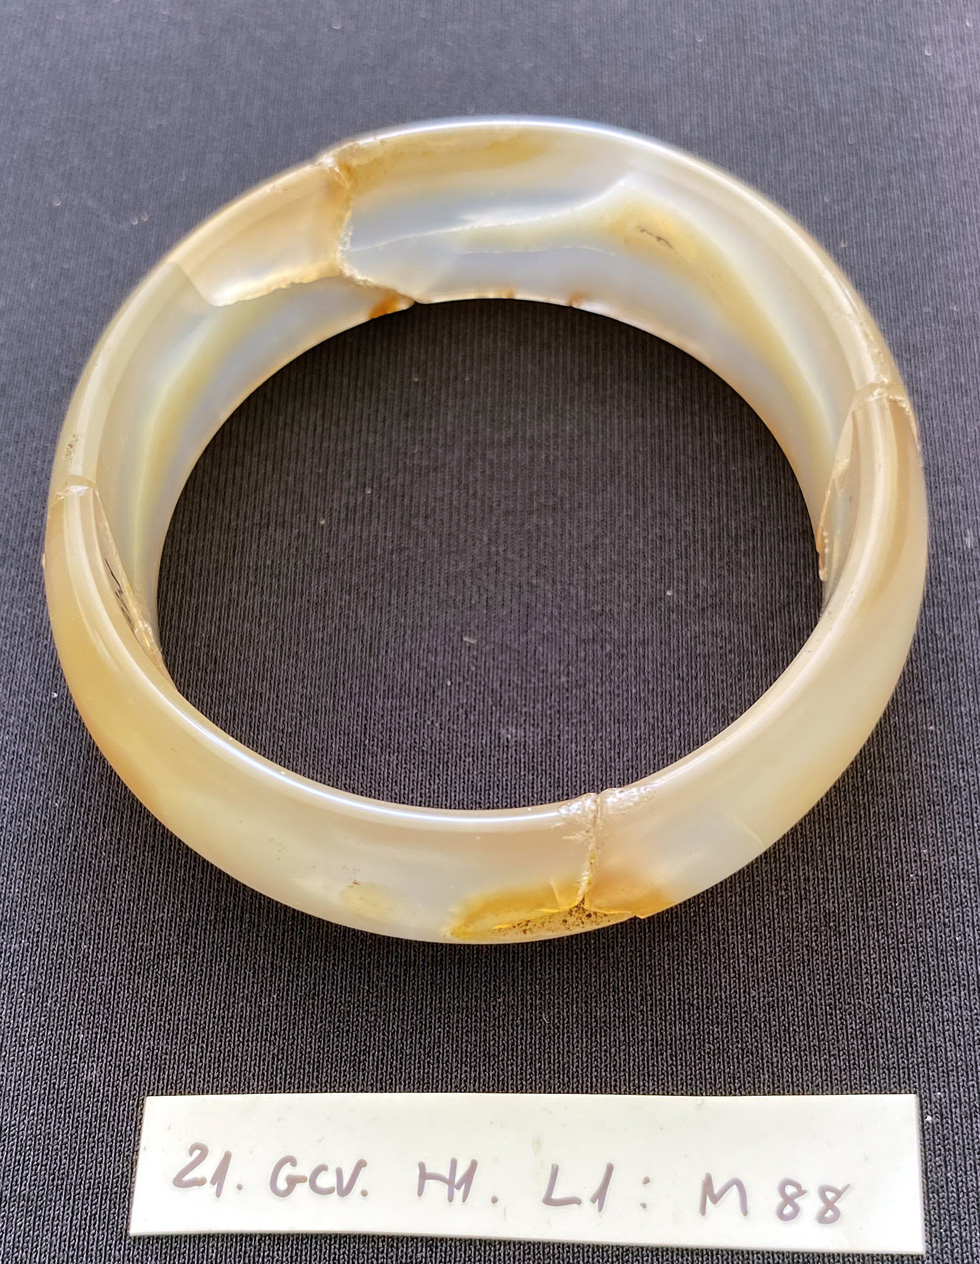 A white agate bracelet. Photo: L.Dien / Tuoi Tre